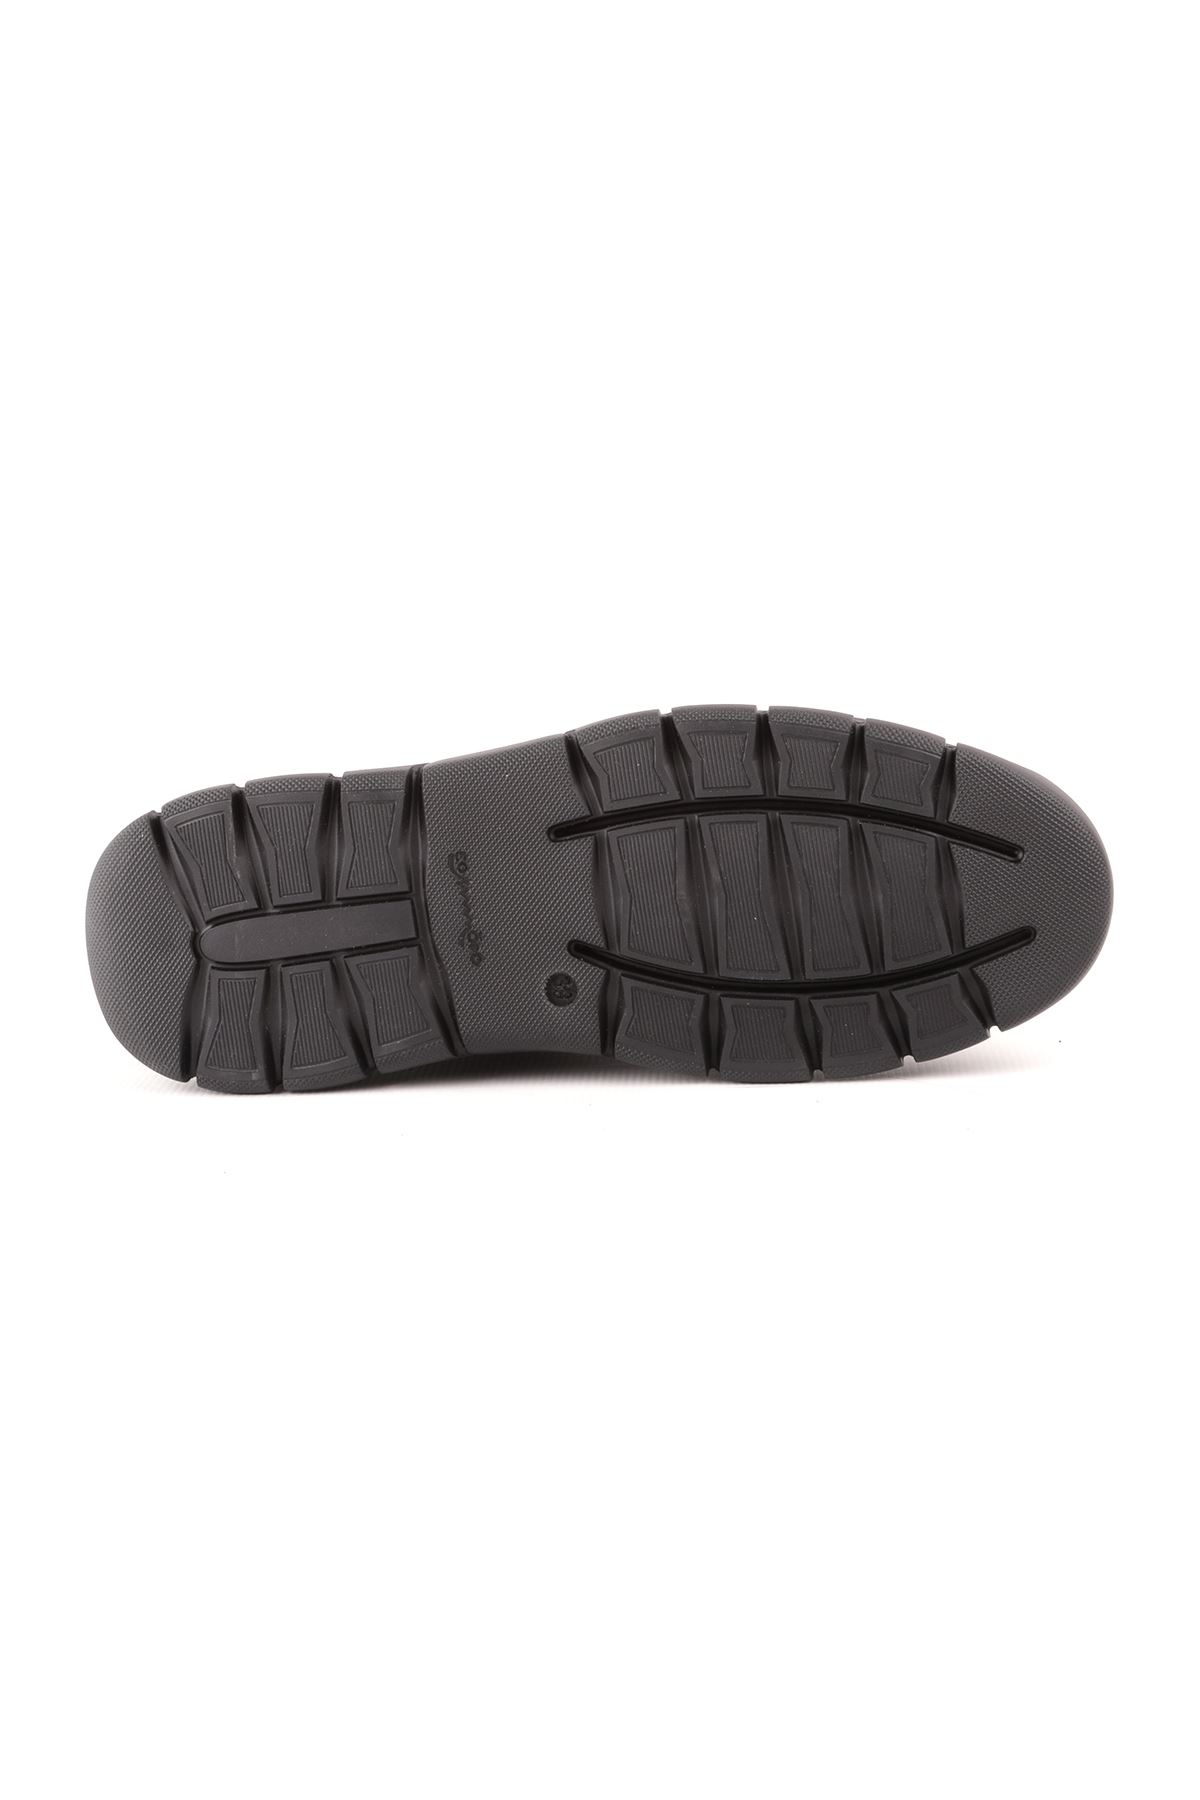 Libero L4846 Siyah Casual Erkek Ayakkabı 